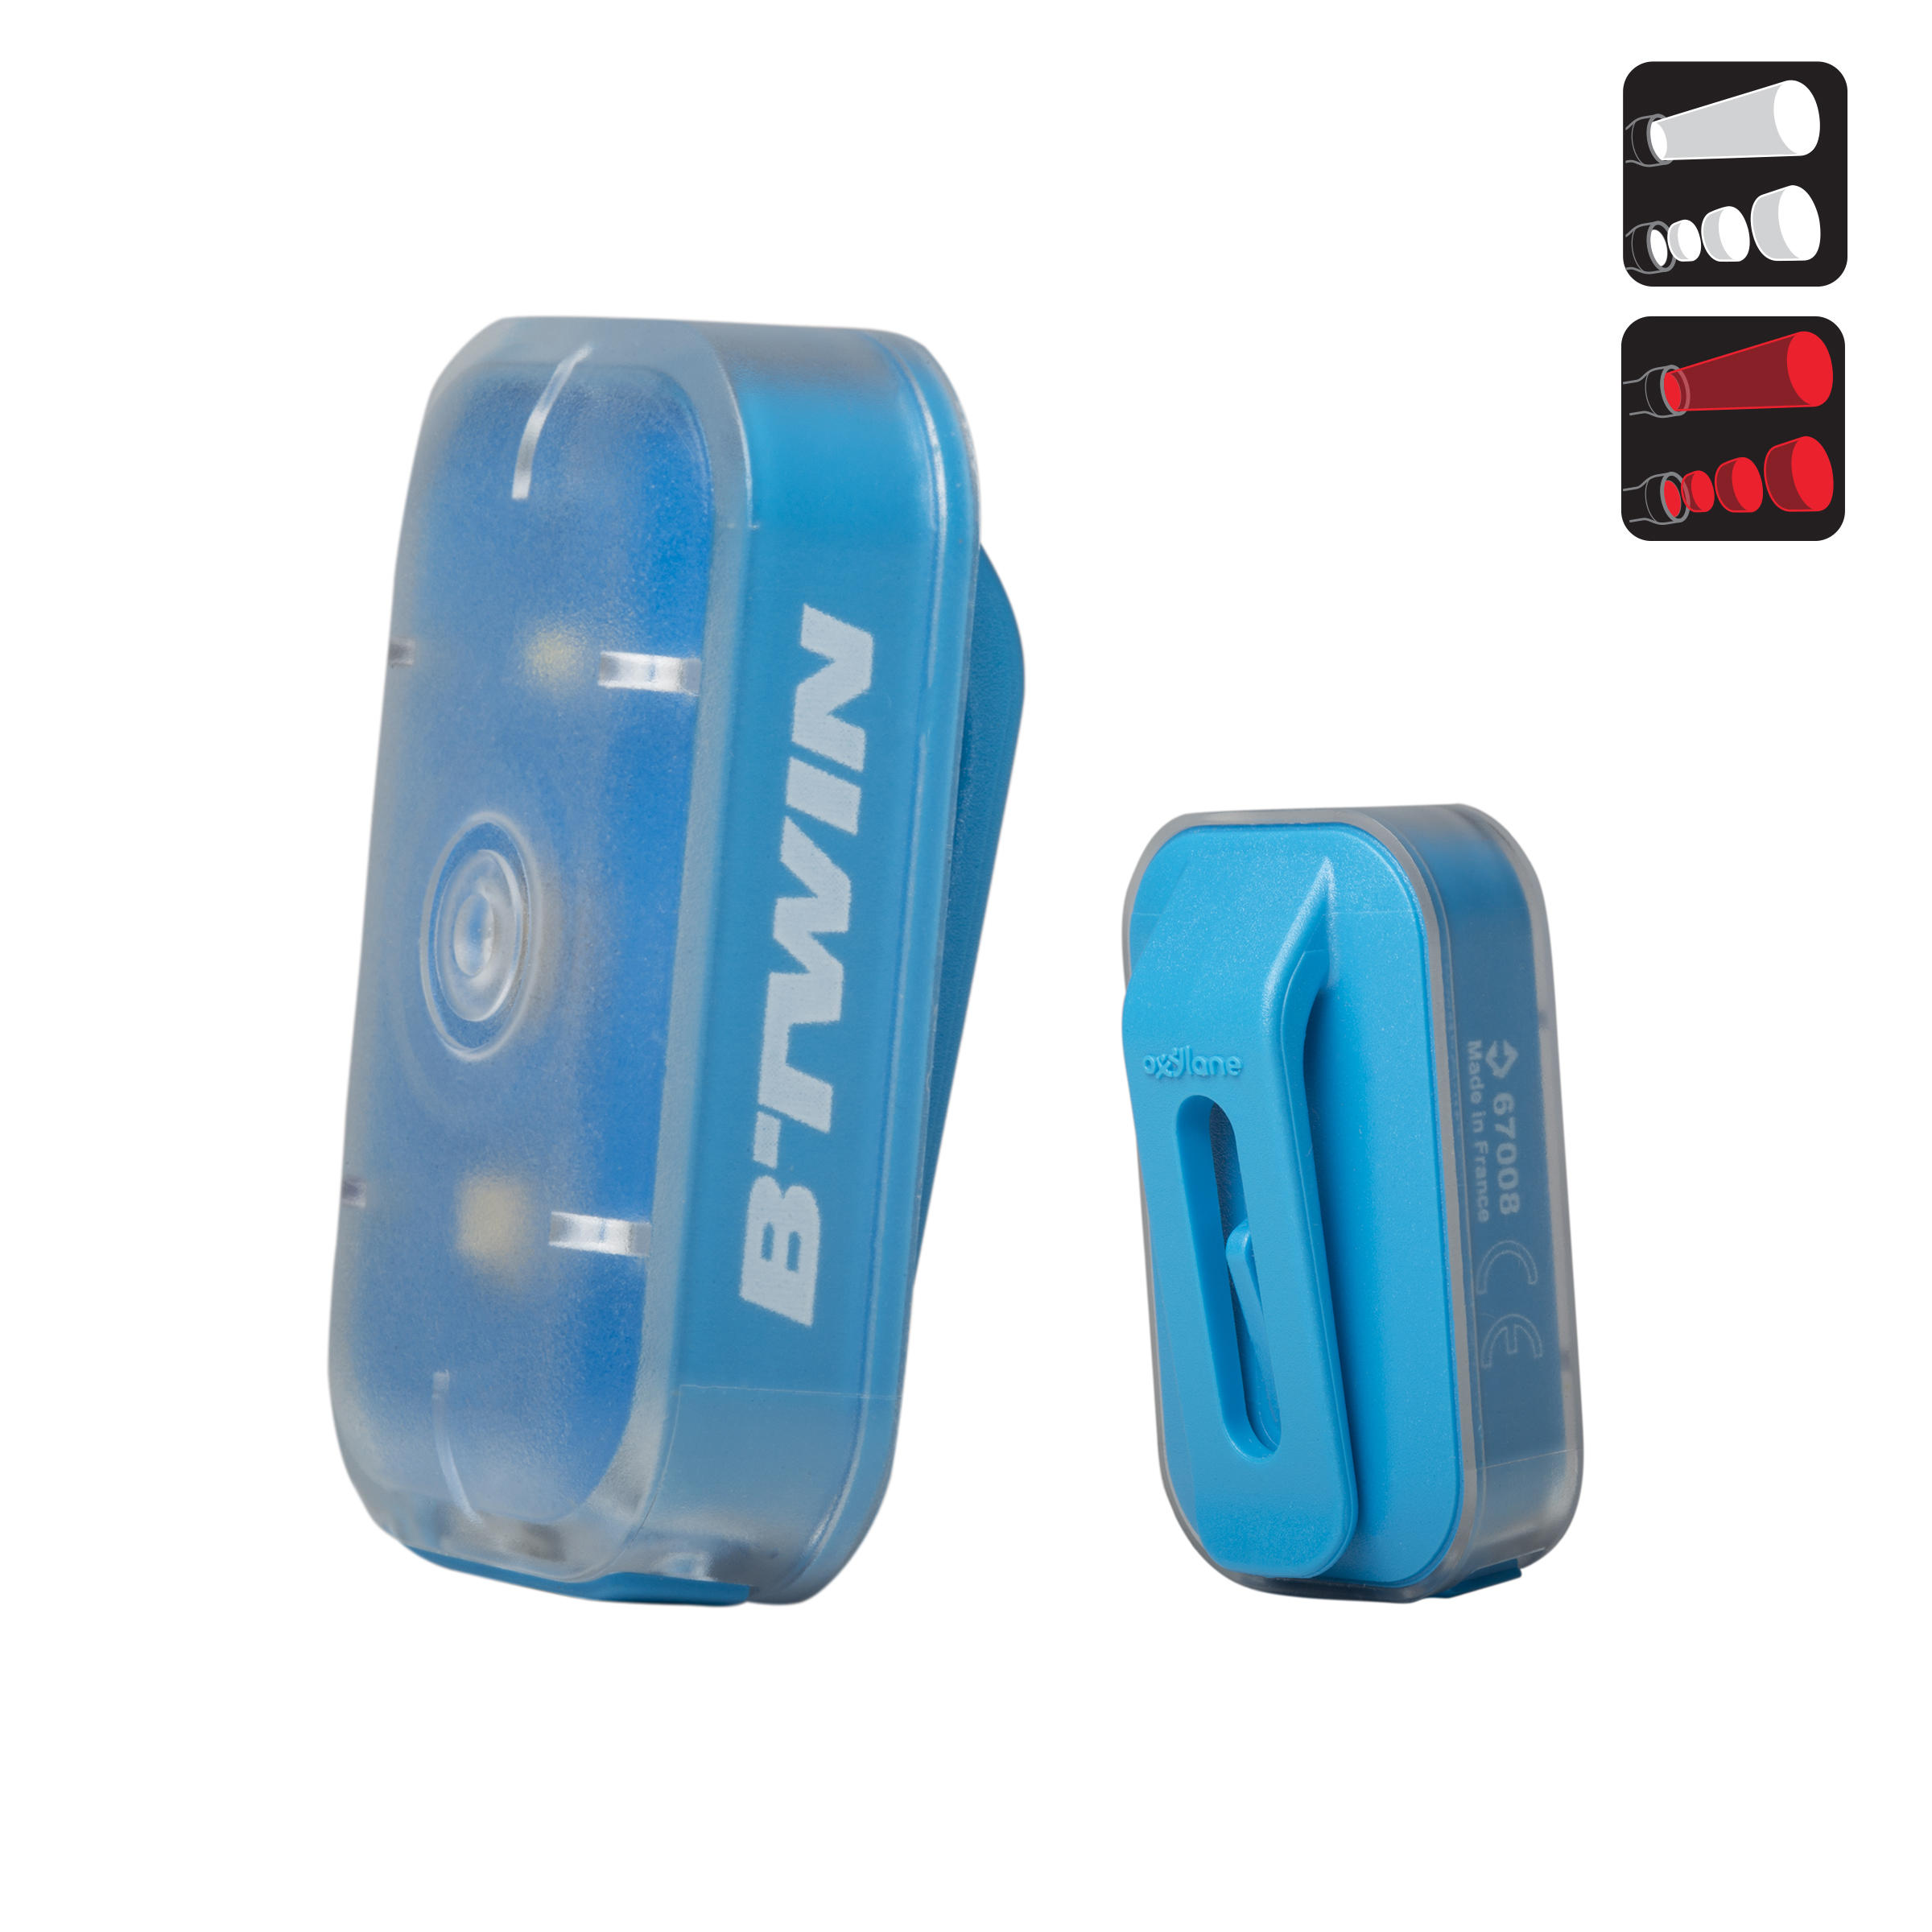 ELOPS CL 500 Front or Rear LED USB Bike Light - Blue